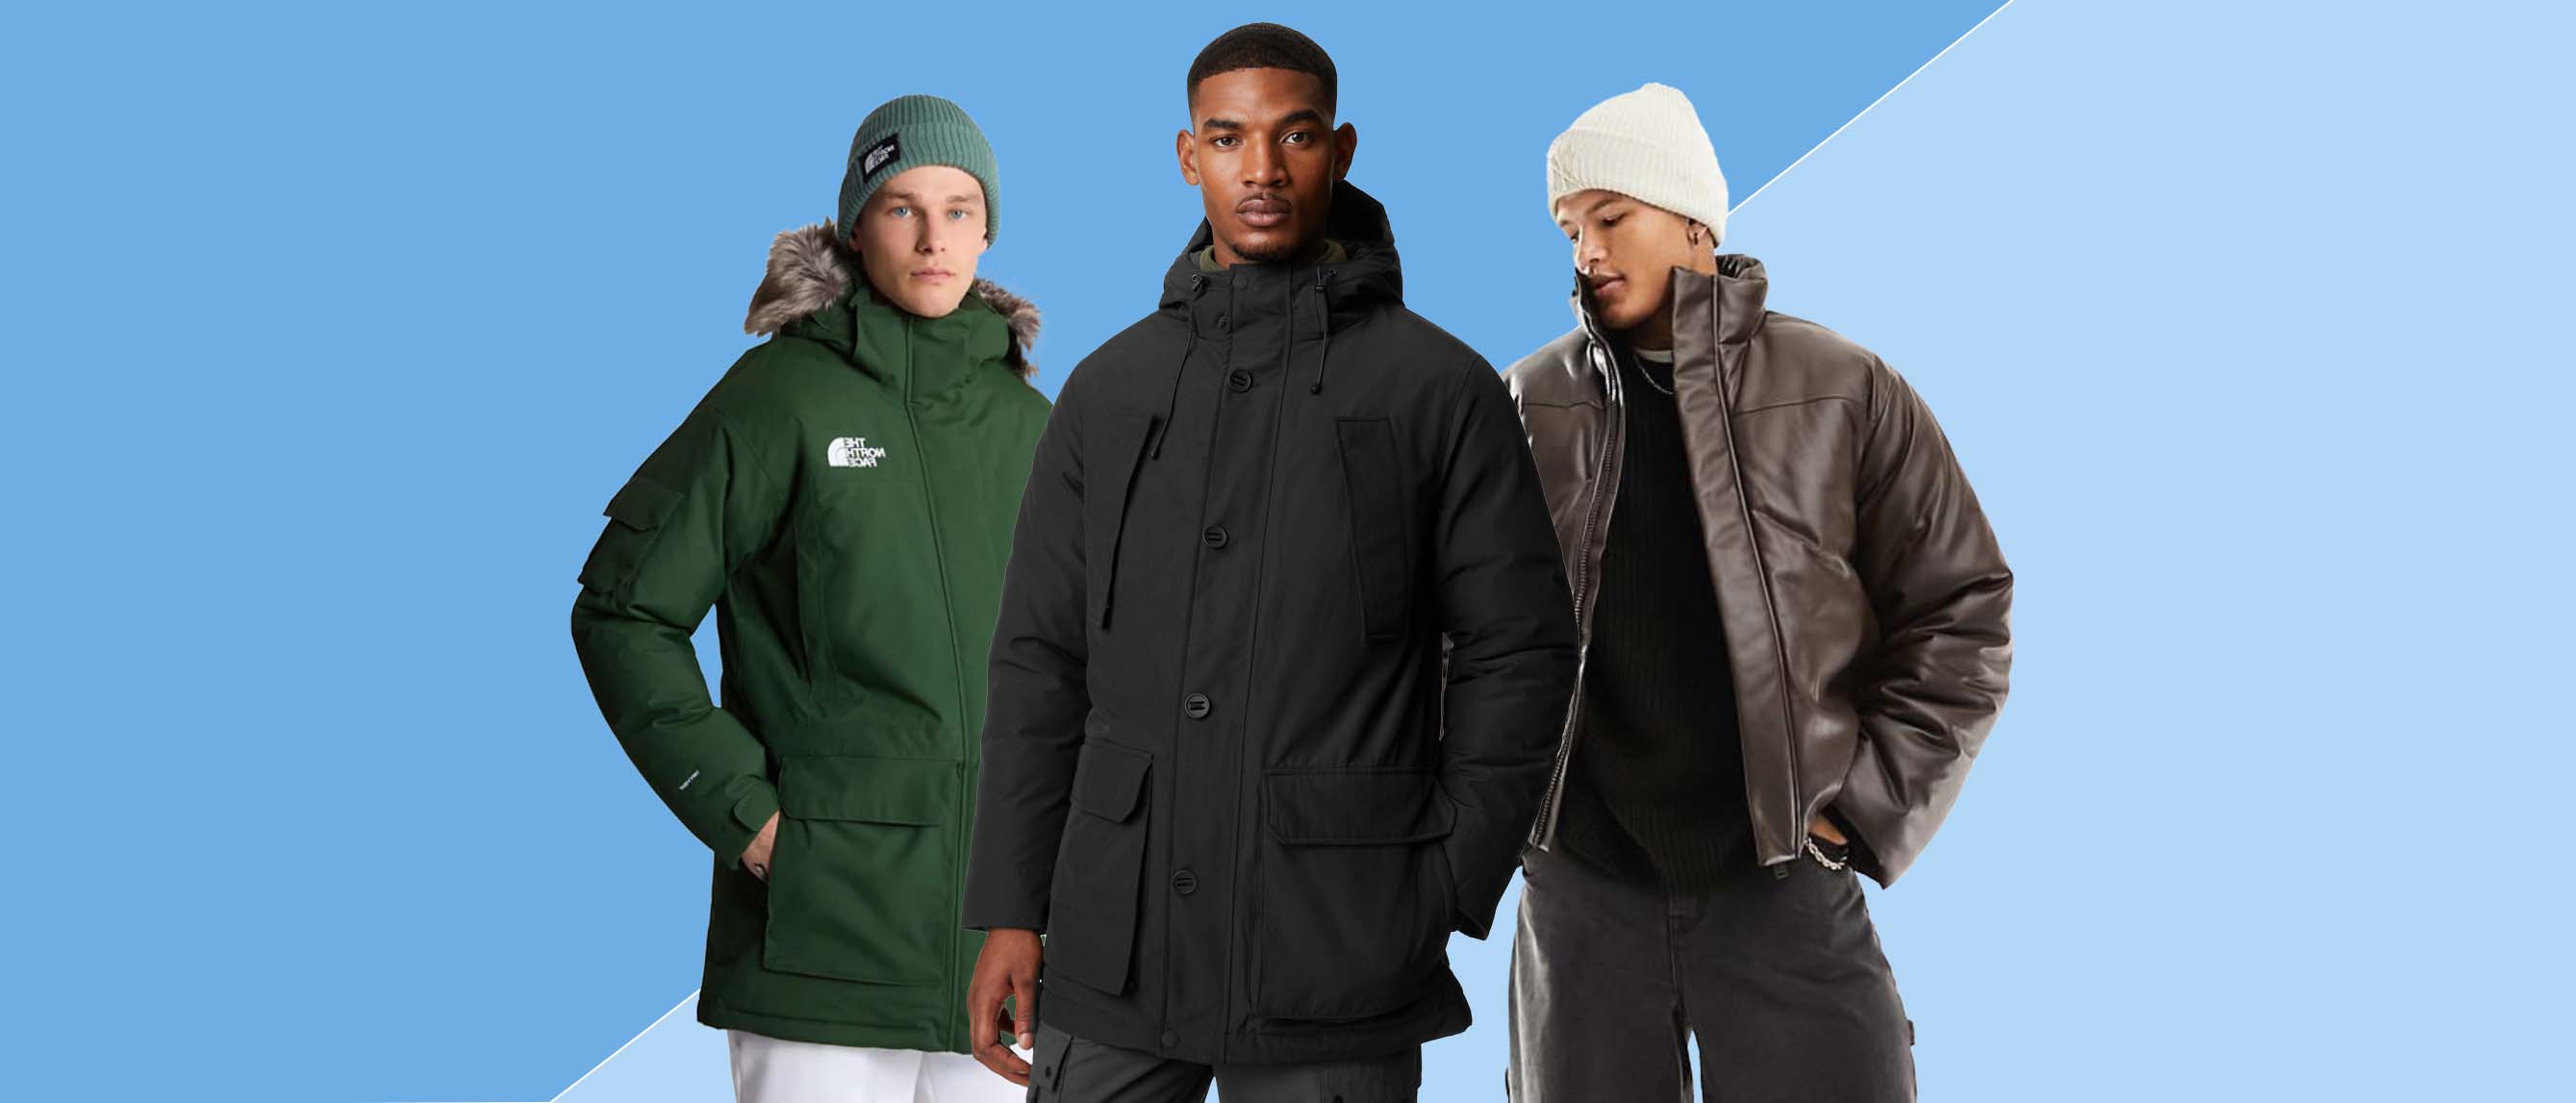 Nike Down-Fill Men's Football Parka Winter Jacket Navy